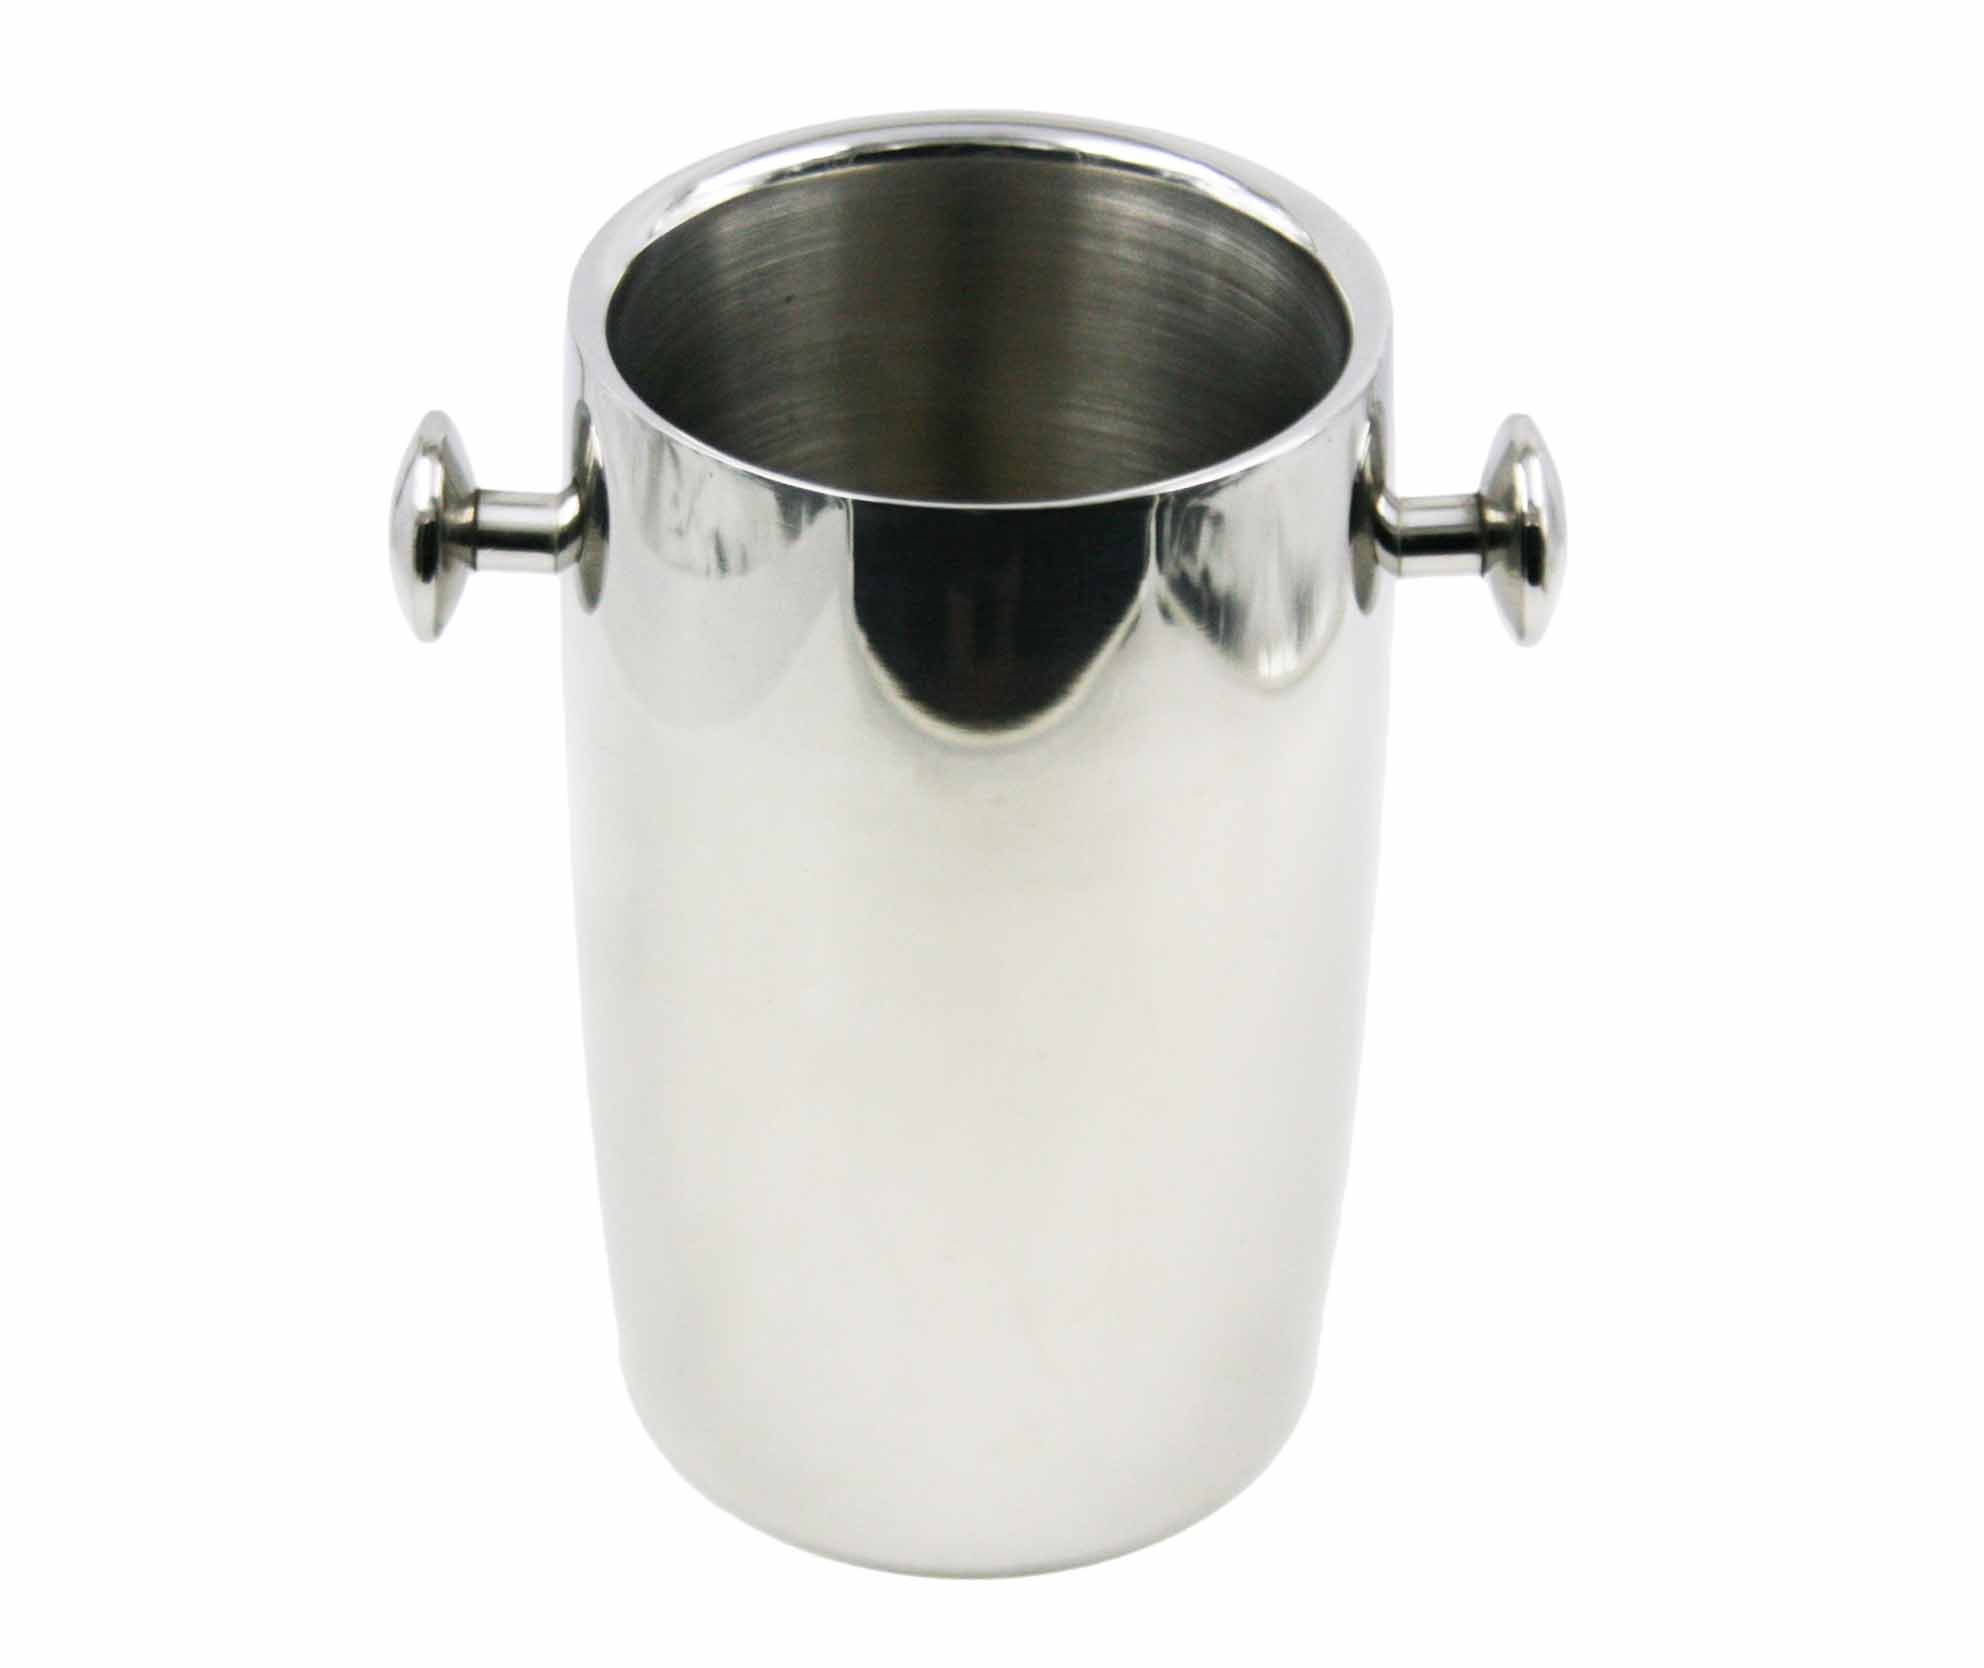 Nuevo diseño de la forma del tambor de acero inoxidable maneja Cubitera Champagne Bucket EB-FC30